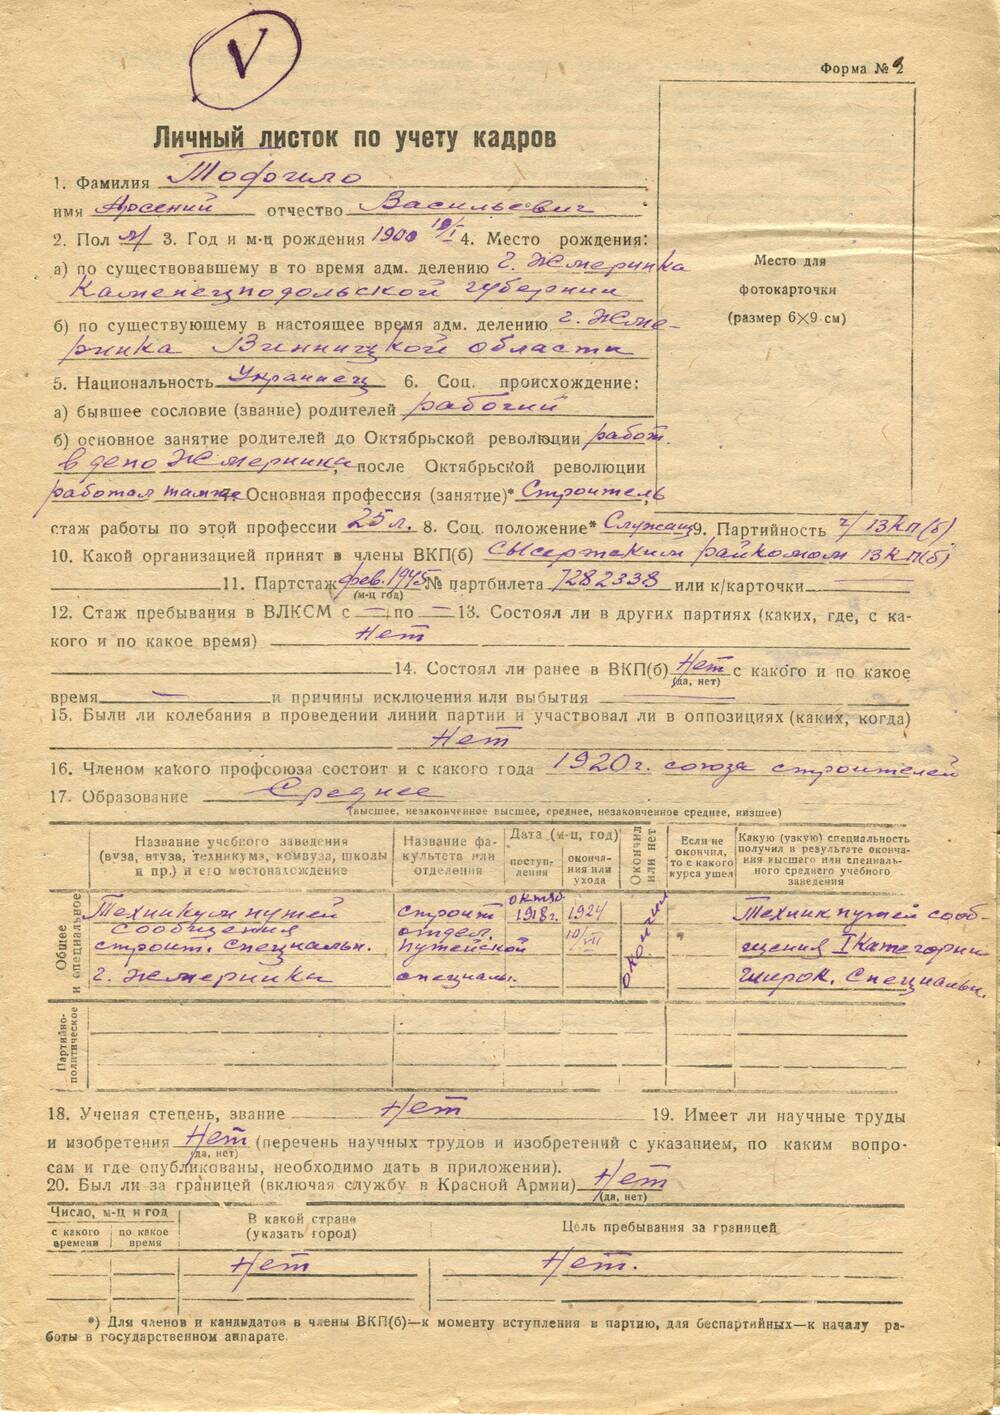 Личный листок по учёту кадров Тофило Арсения Васильевича. 2 октября 1948 г.